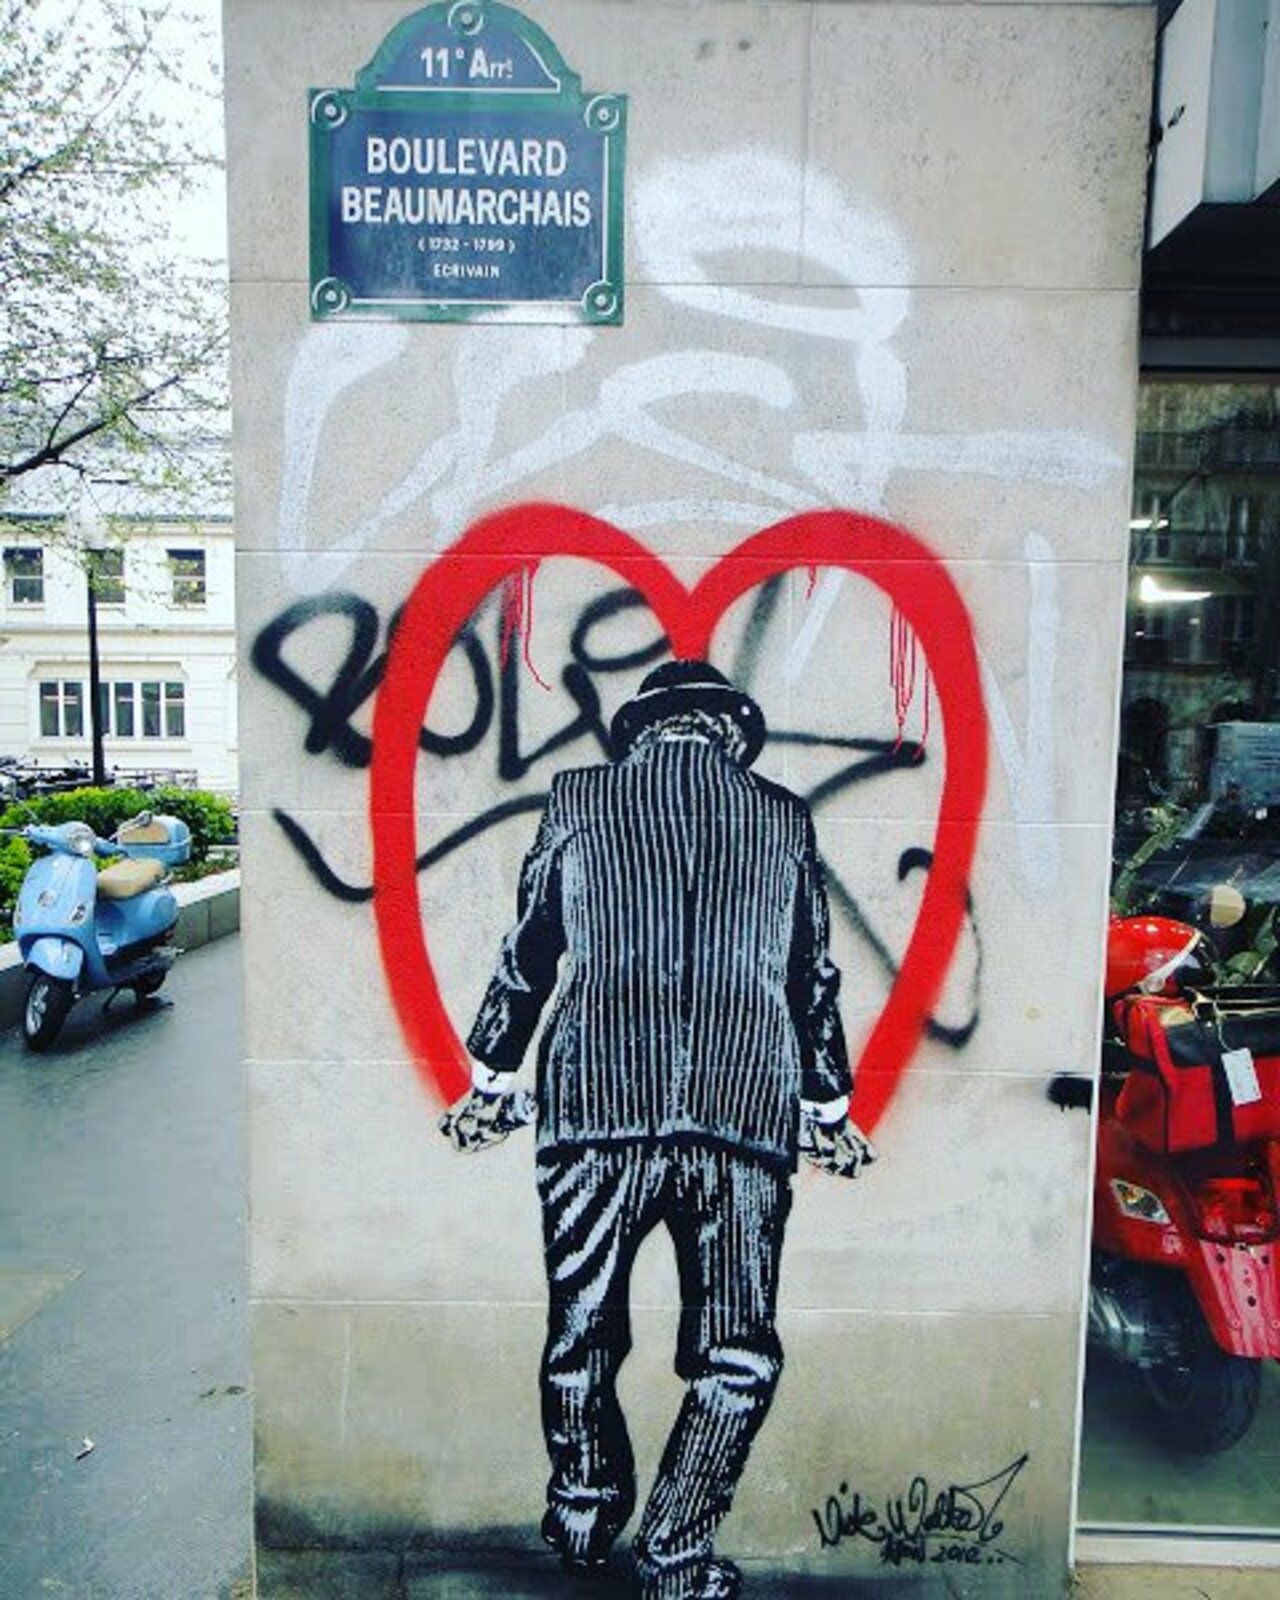 circumjacent_fr: #Paris #graffiti photo by girlwithstyle78 http://ift.tt/1MZkt1H #StreetArt https://t.co/zmQDyY6ldo